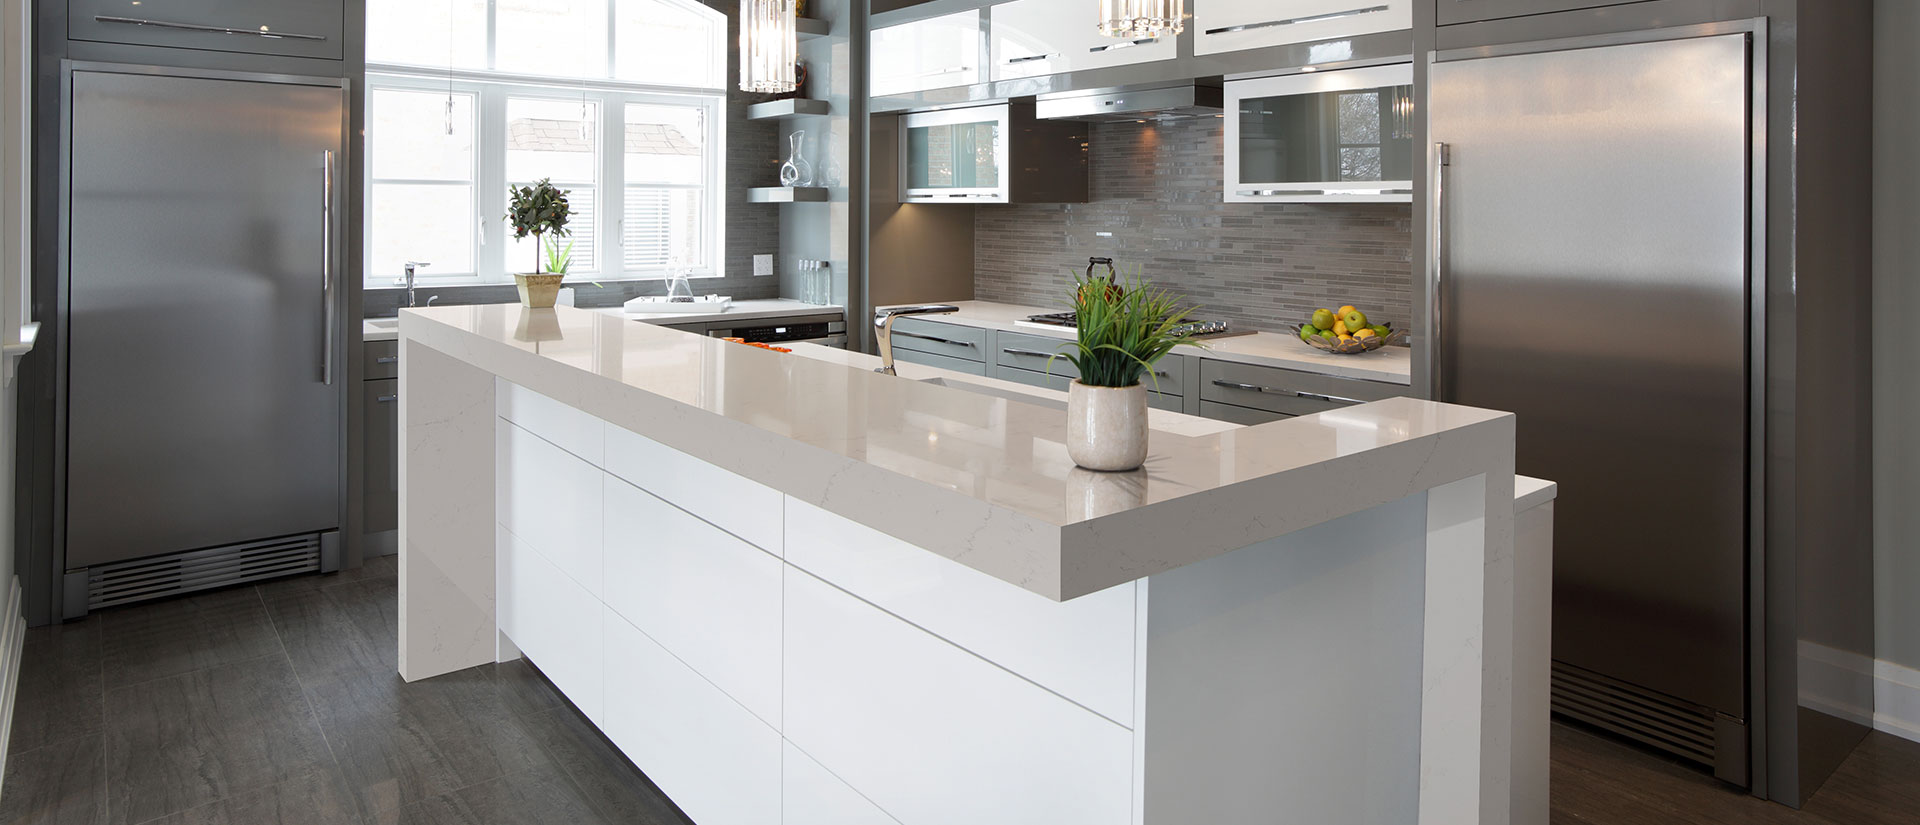 Alabaster white quartz countertop in a well-lit kitchen